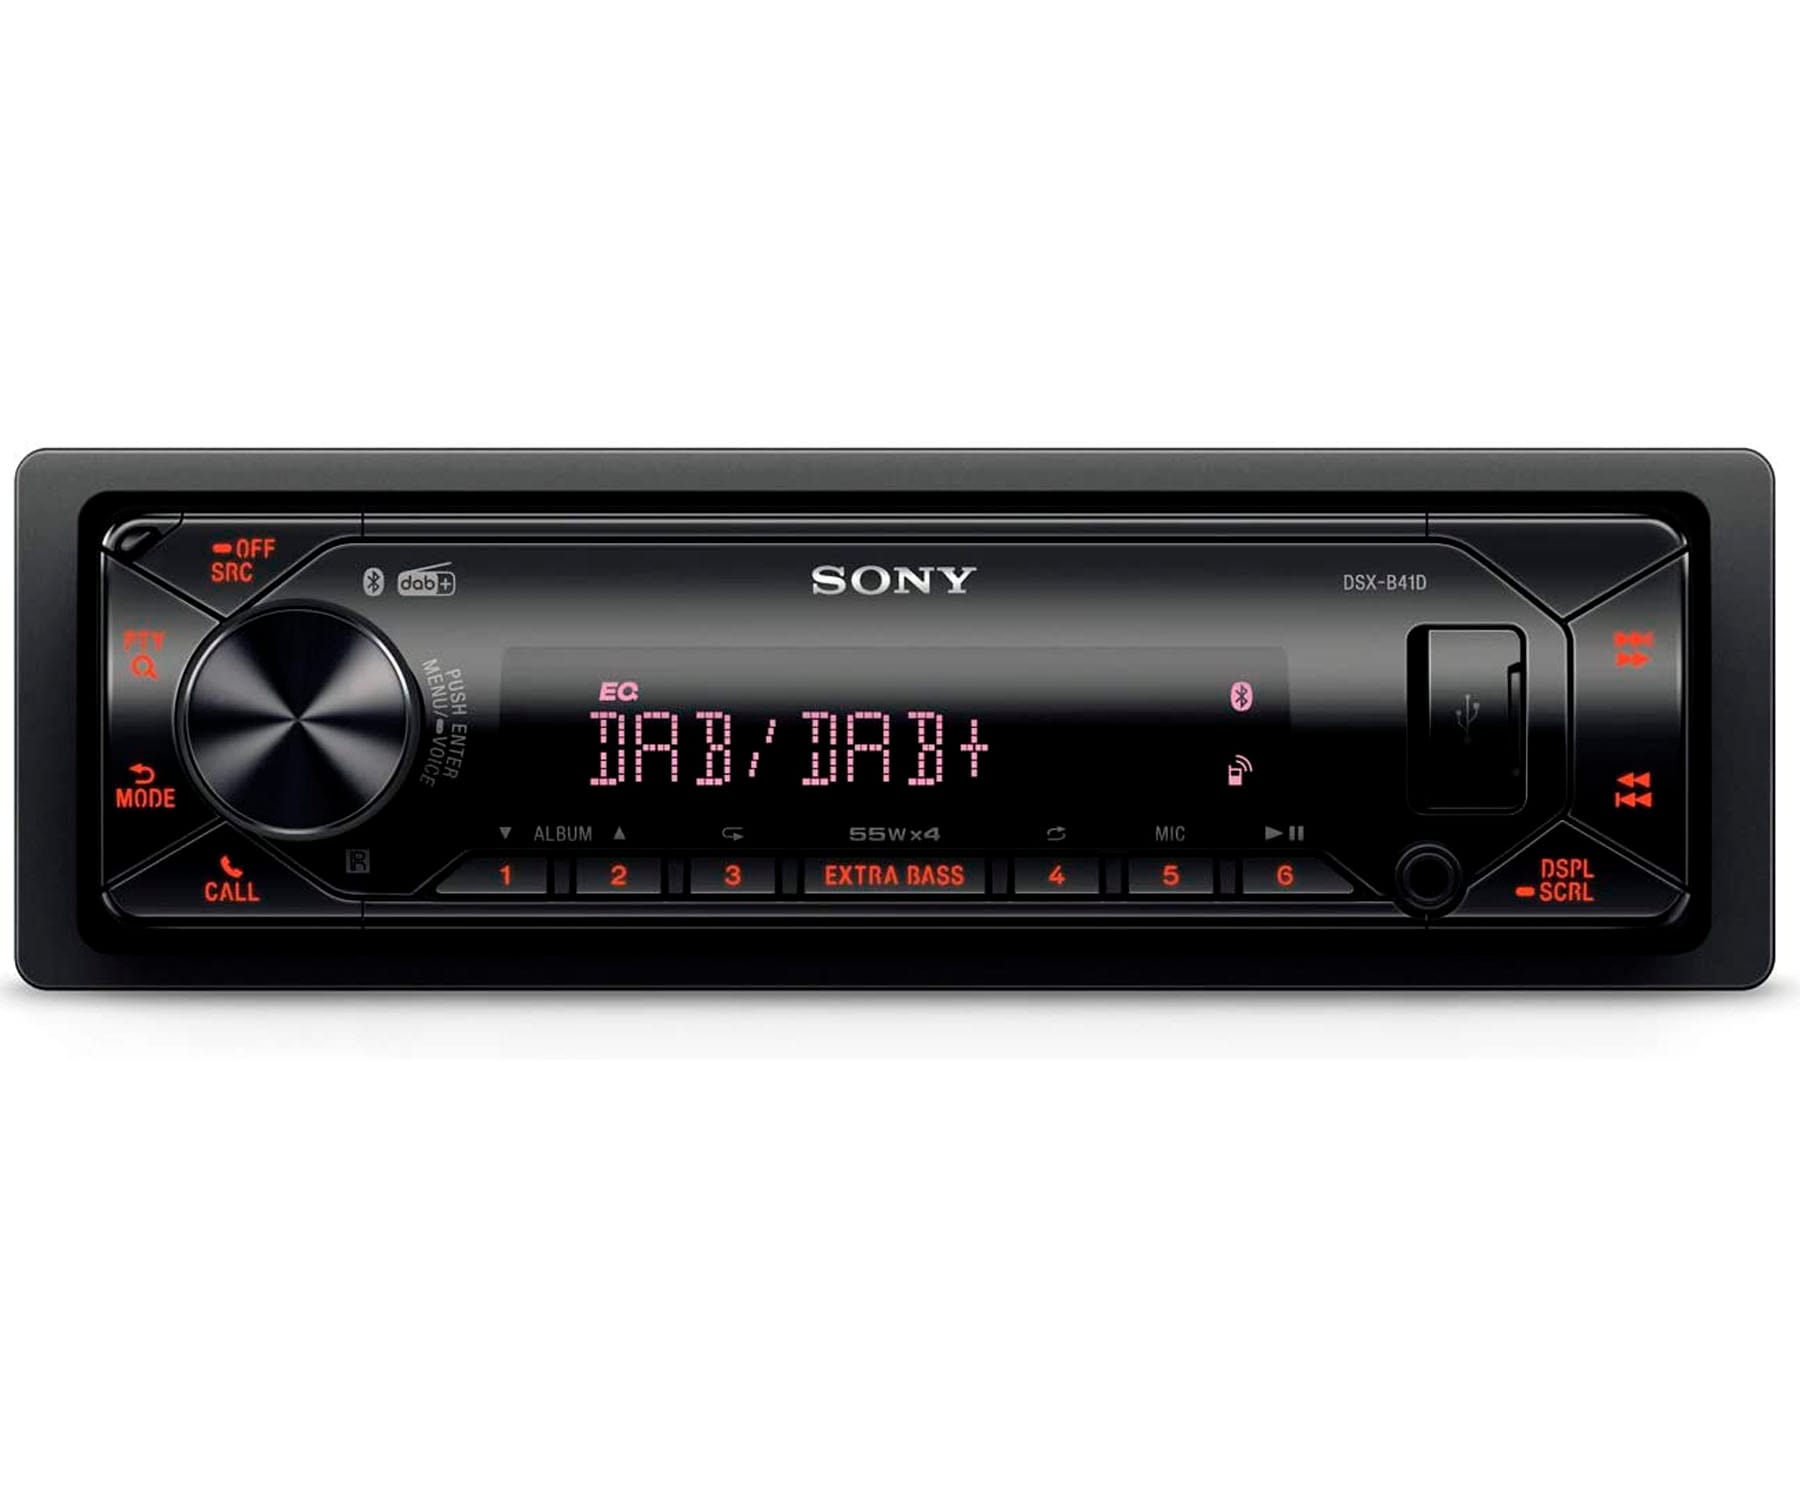 Radio reloj y sistema de altavoces de Sony para iPod